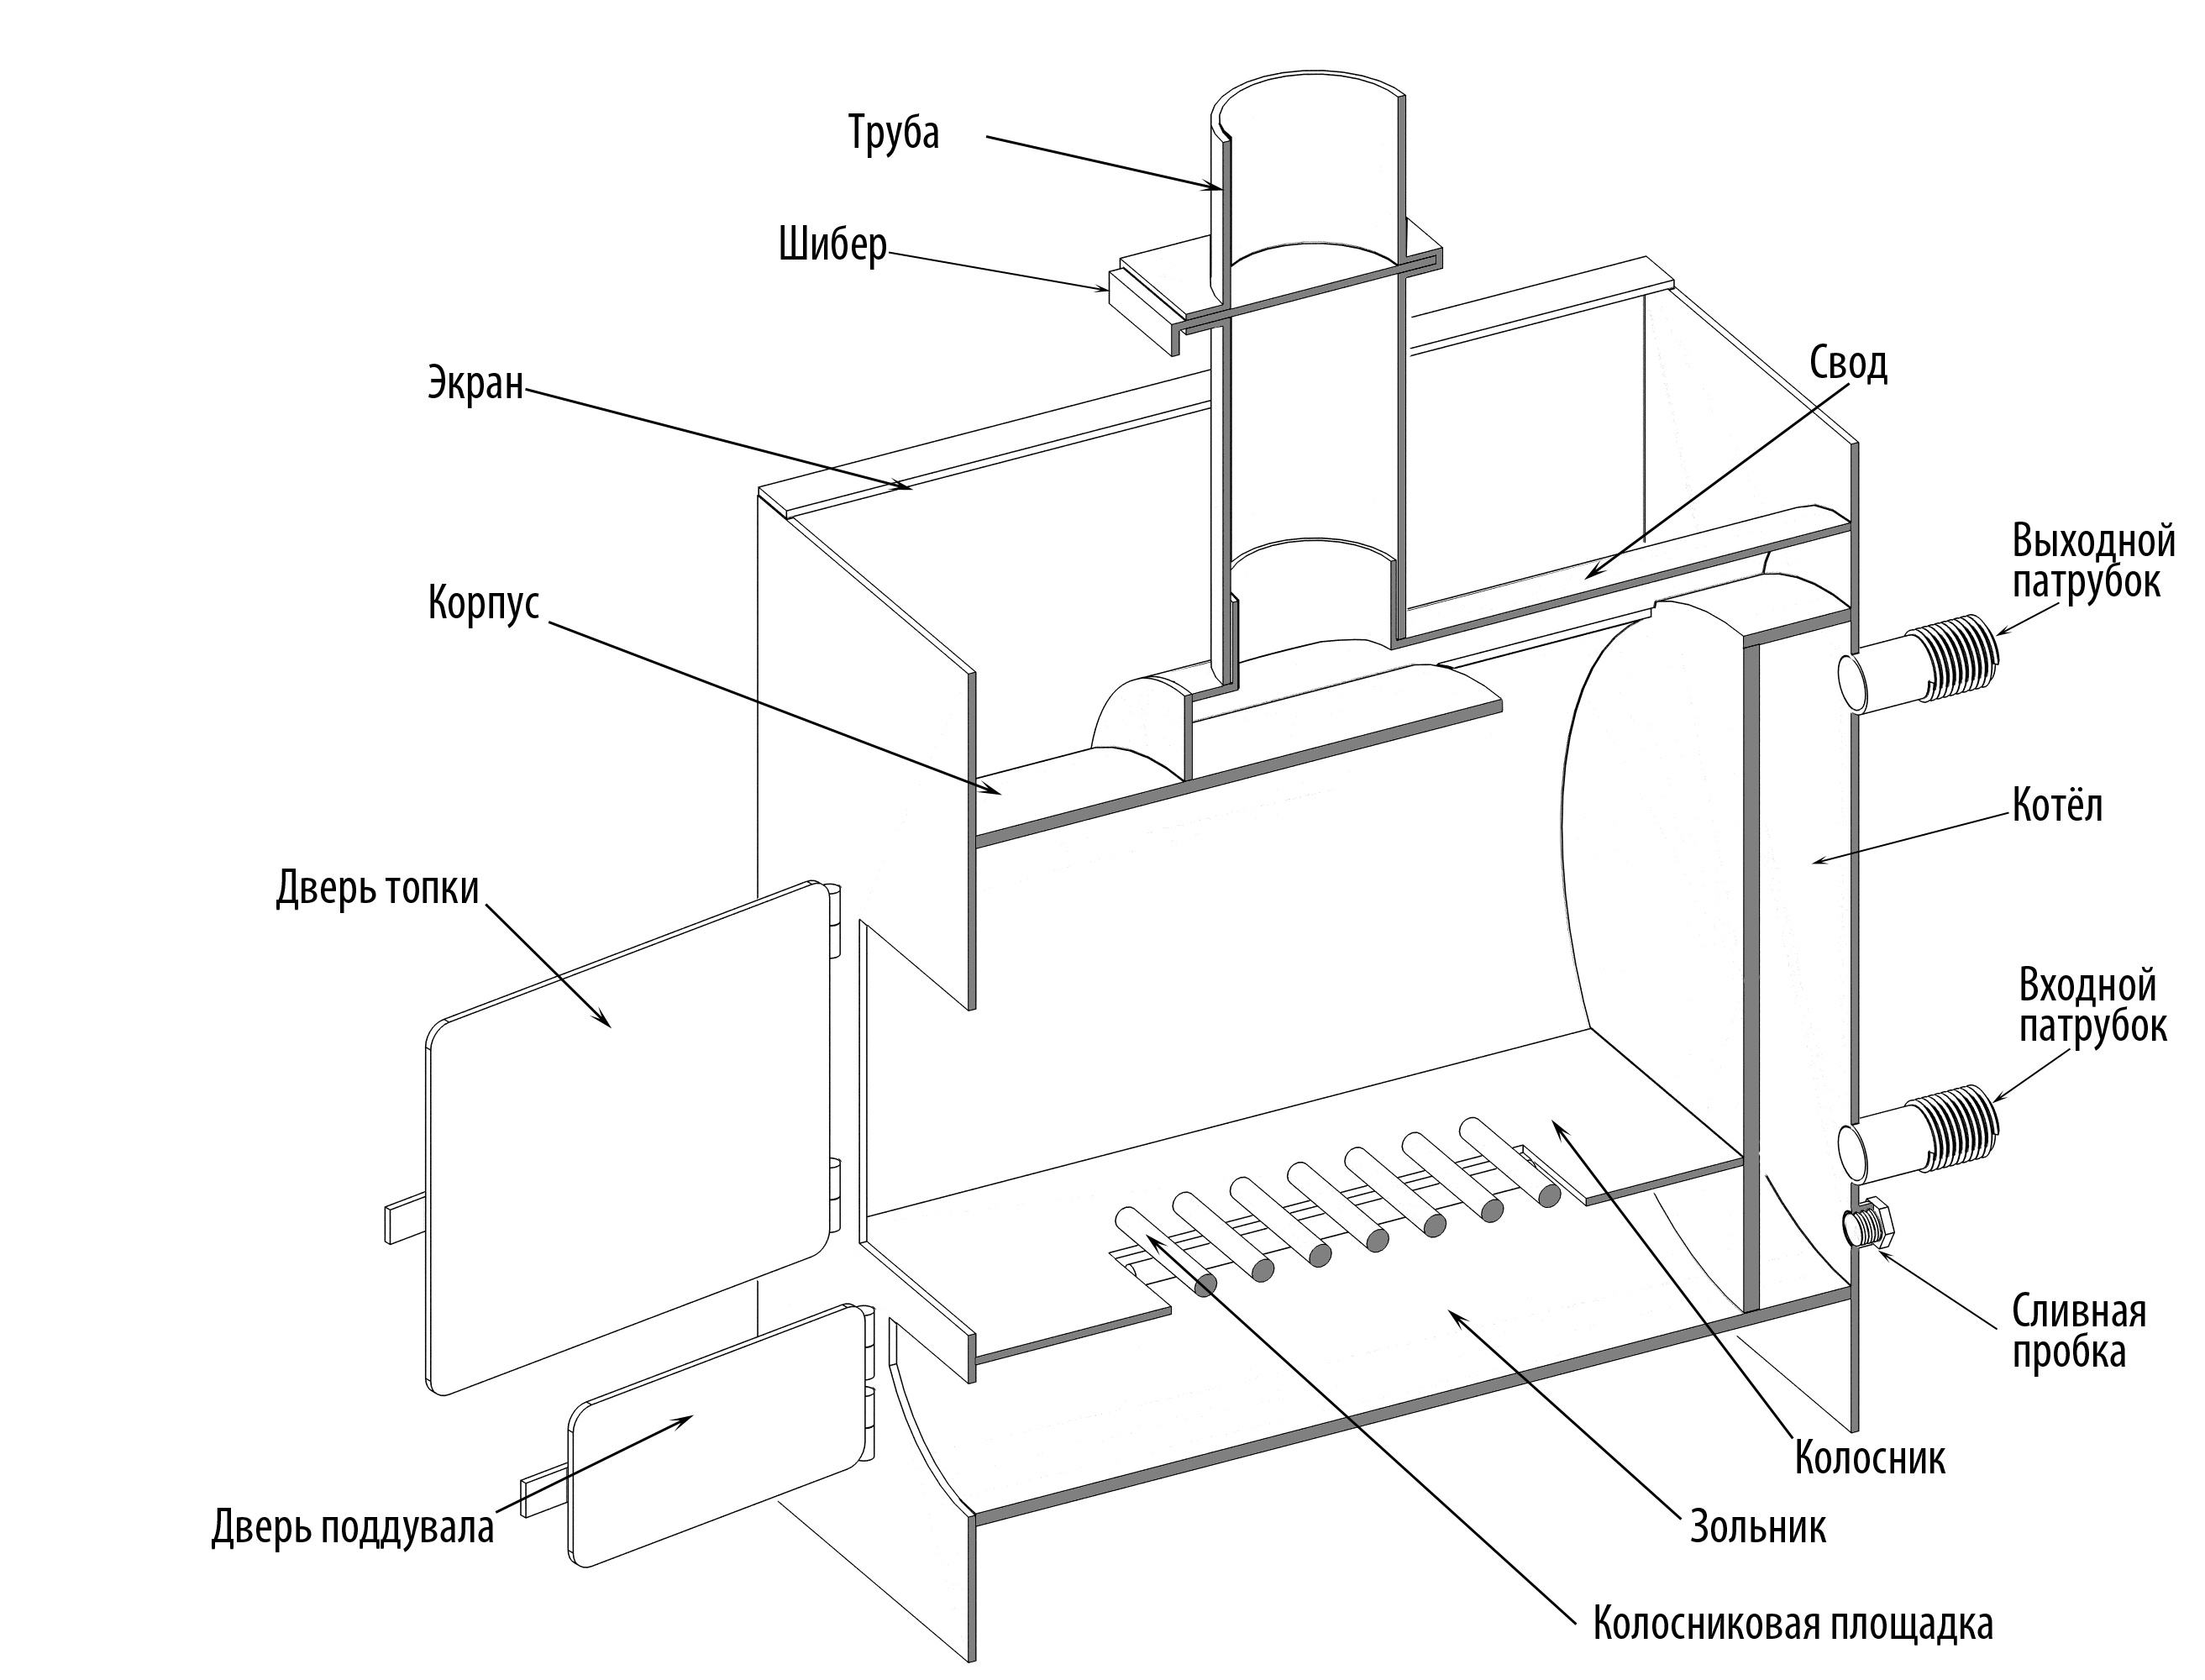 Как изготовить печь для бани из металла своими руками — чертежи с высоким КПД